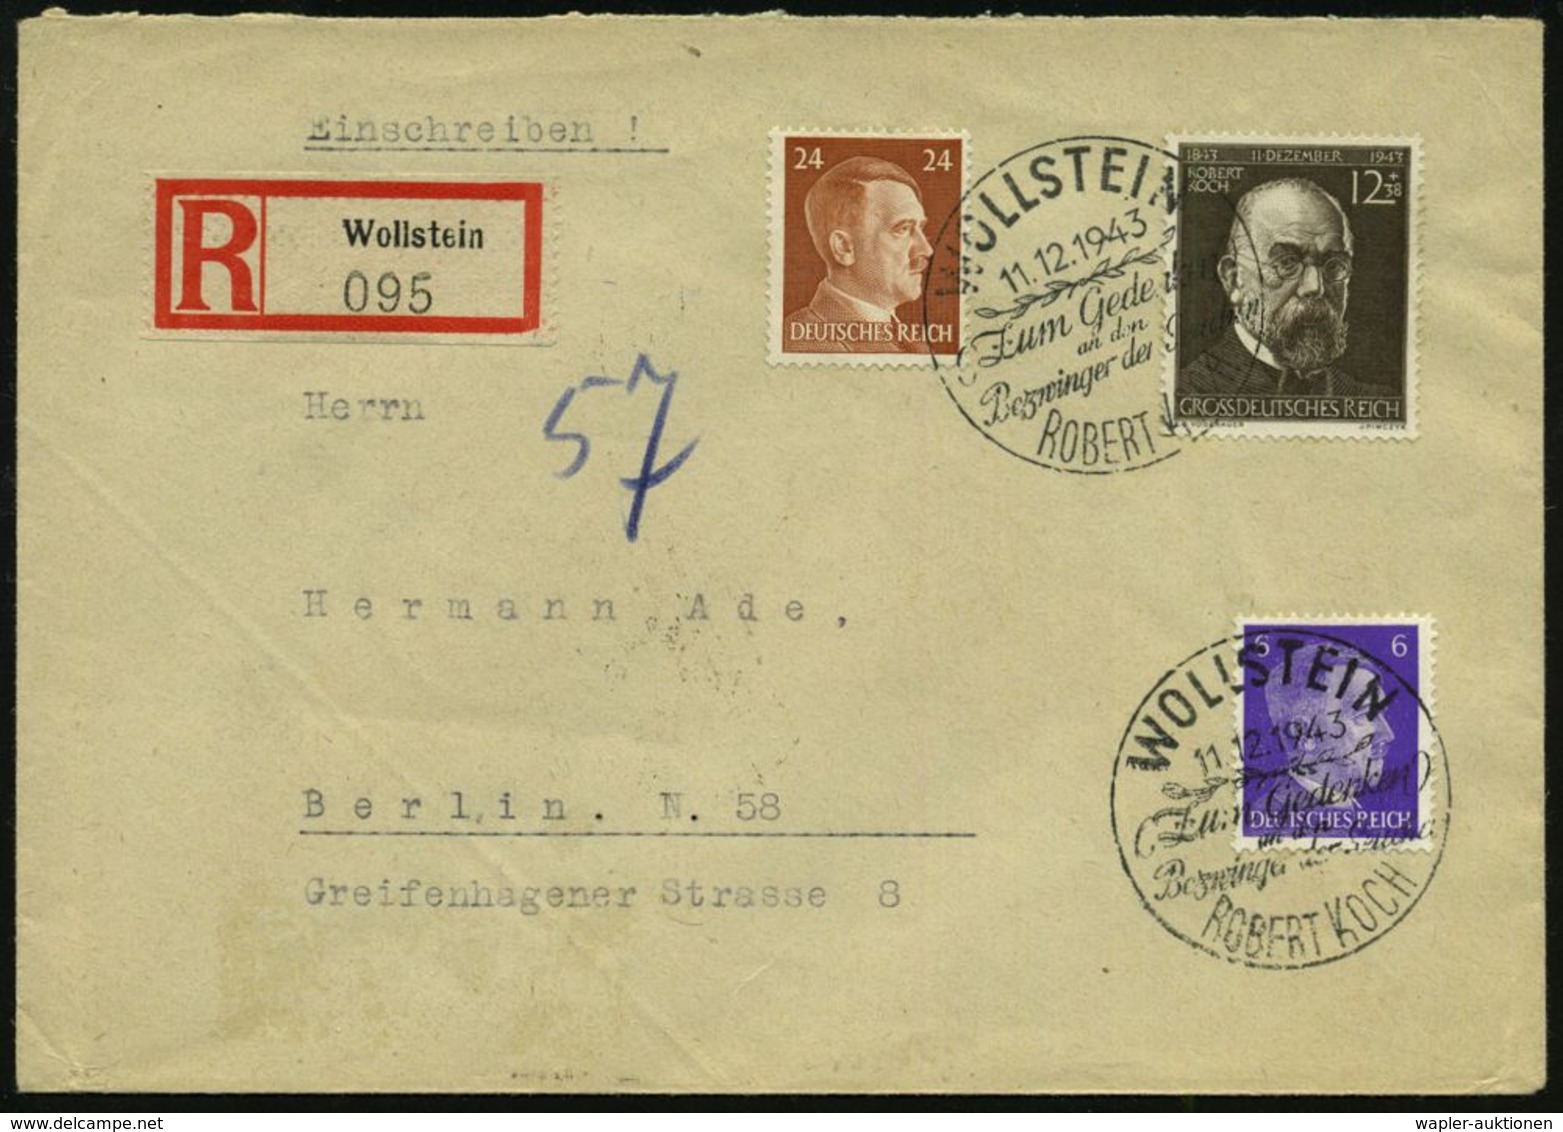 BERÜHMTE MEDIZINER & ÄRZTE : WOLLSTEIN/ ..Bezwinger D.Seuchen/ ROBERT KOCH 1943 (11.12.) SSt Auf 12 + 38 Pf. Robert Koch - Médecine